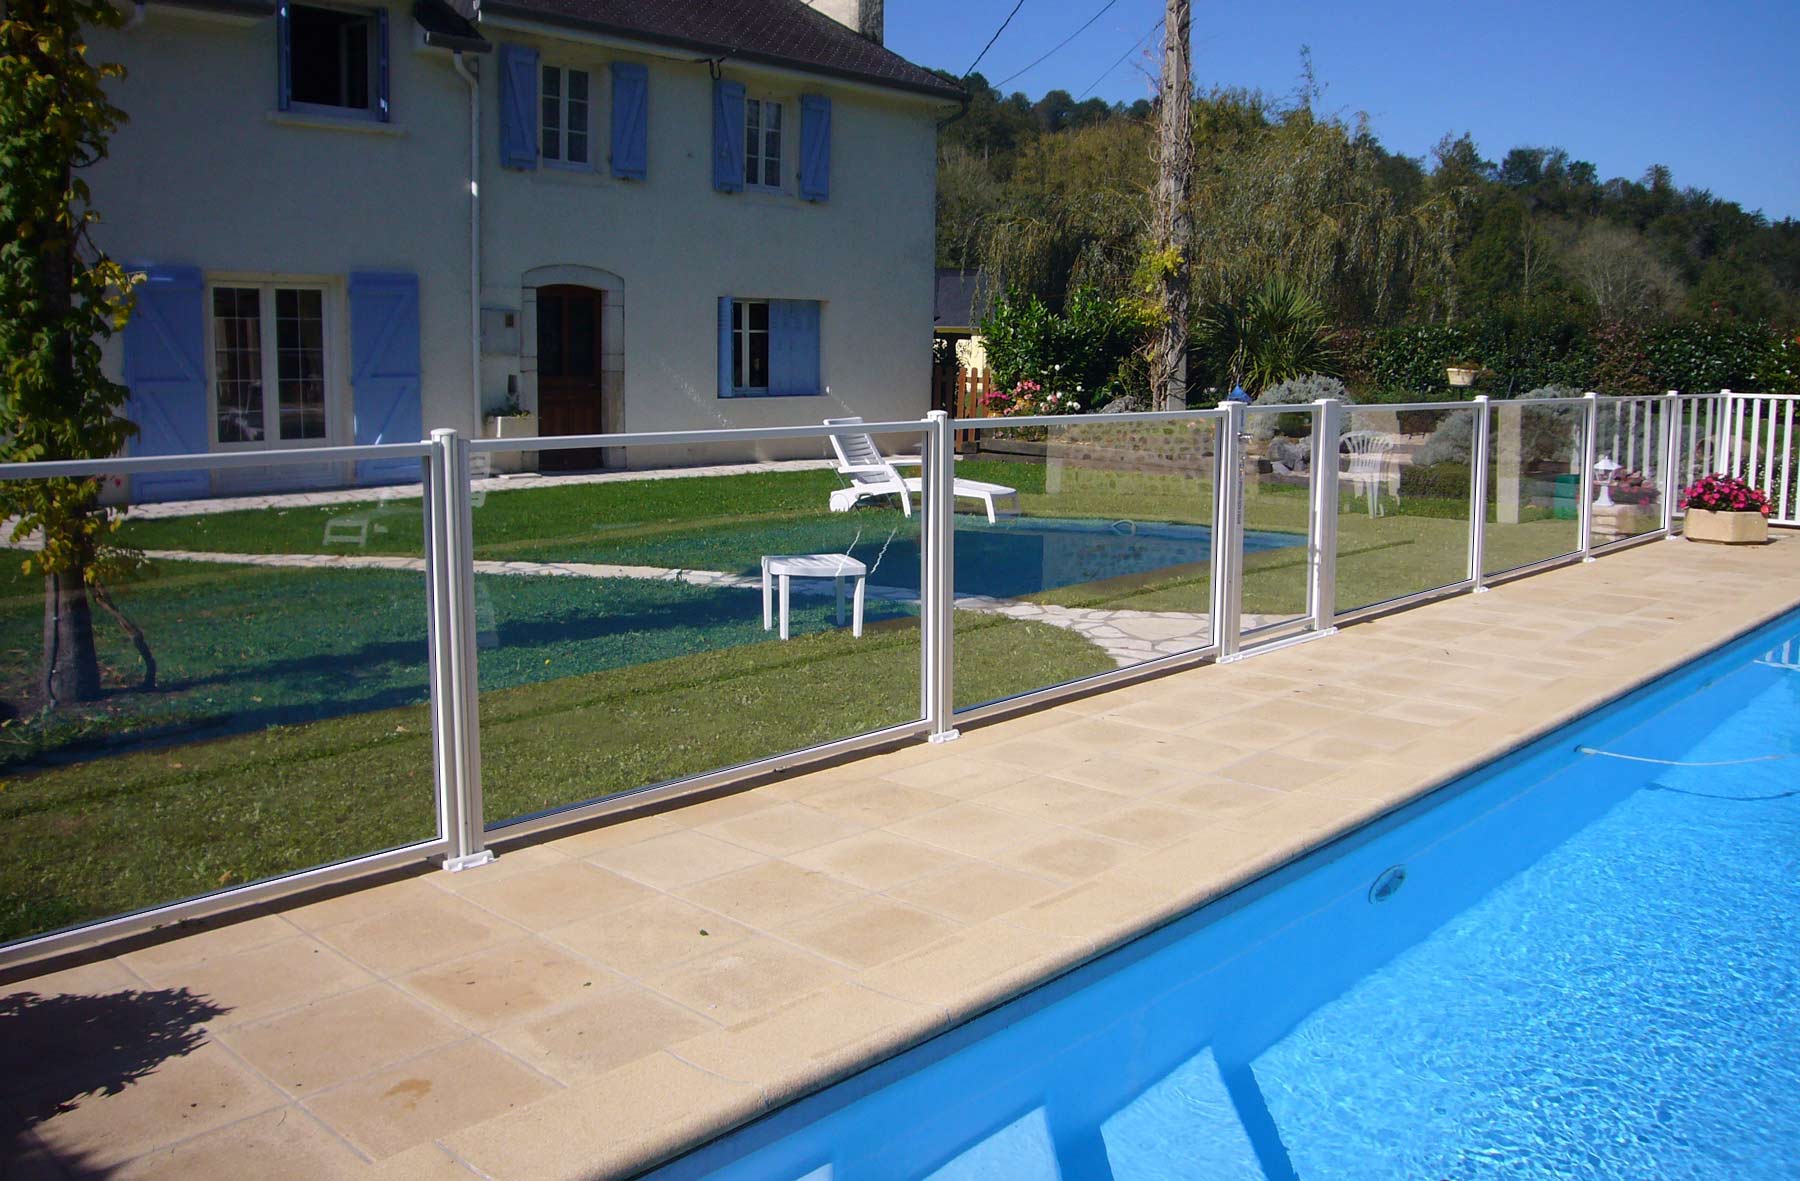 résistante aux chocs, la barriere de verre de protection de piscine garantie la sécurité même de jeux extérieurs